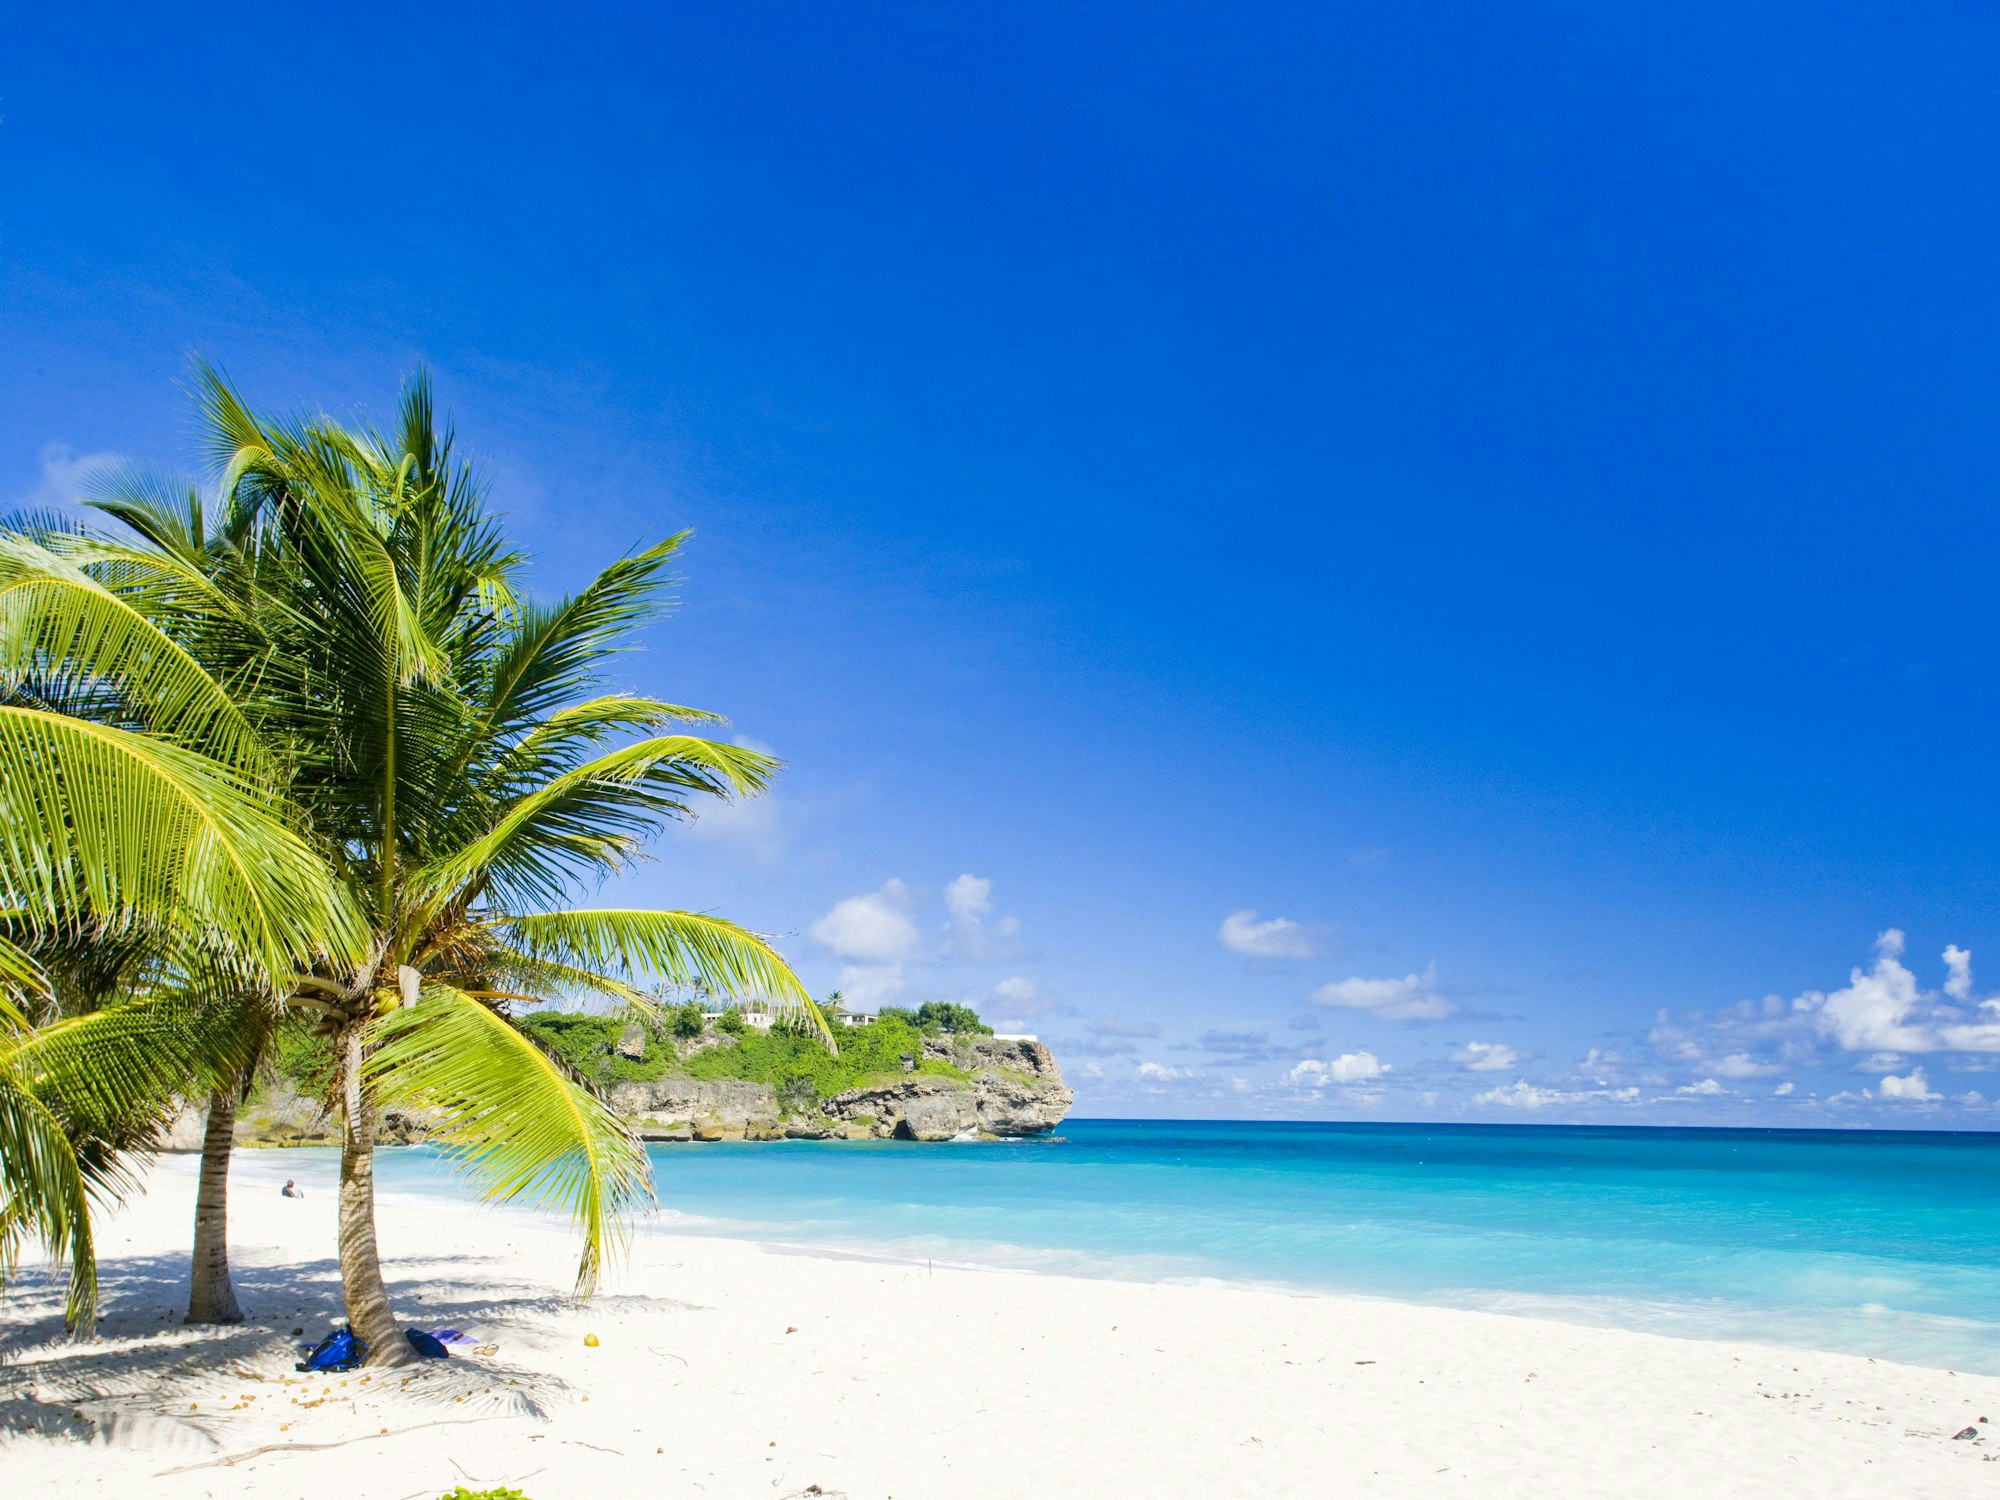 Ein Strand mit grünen Palmen und hellblauem Meer auf Barbados.